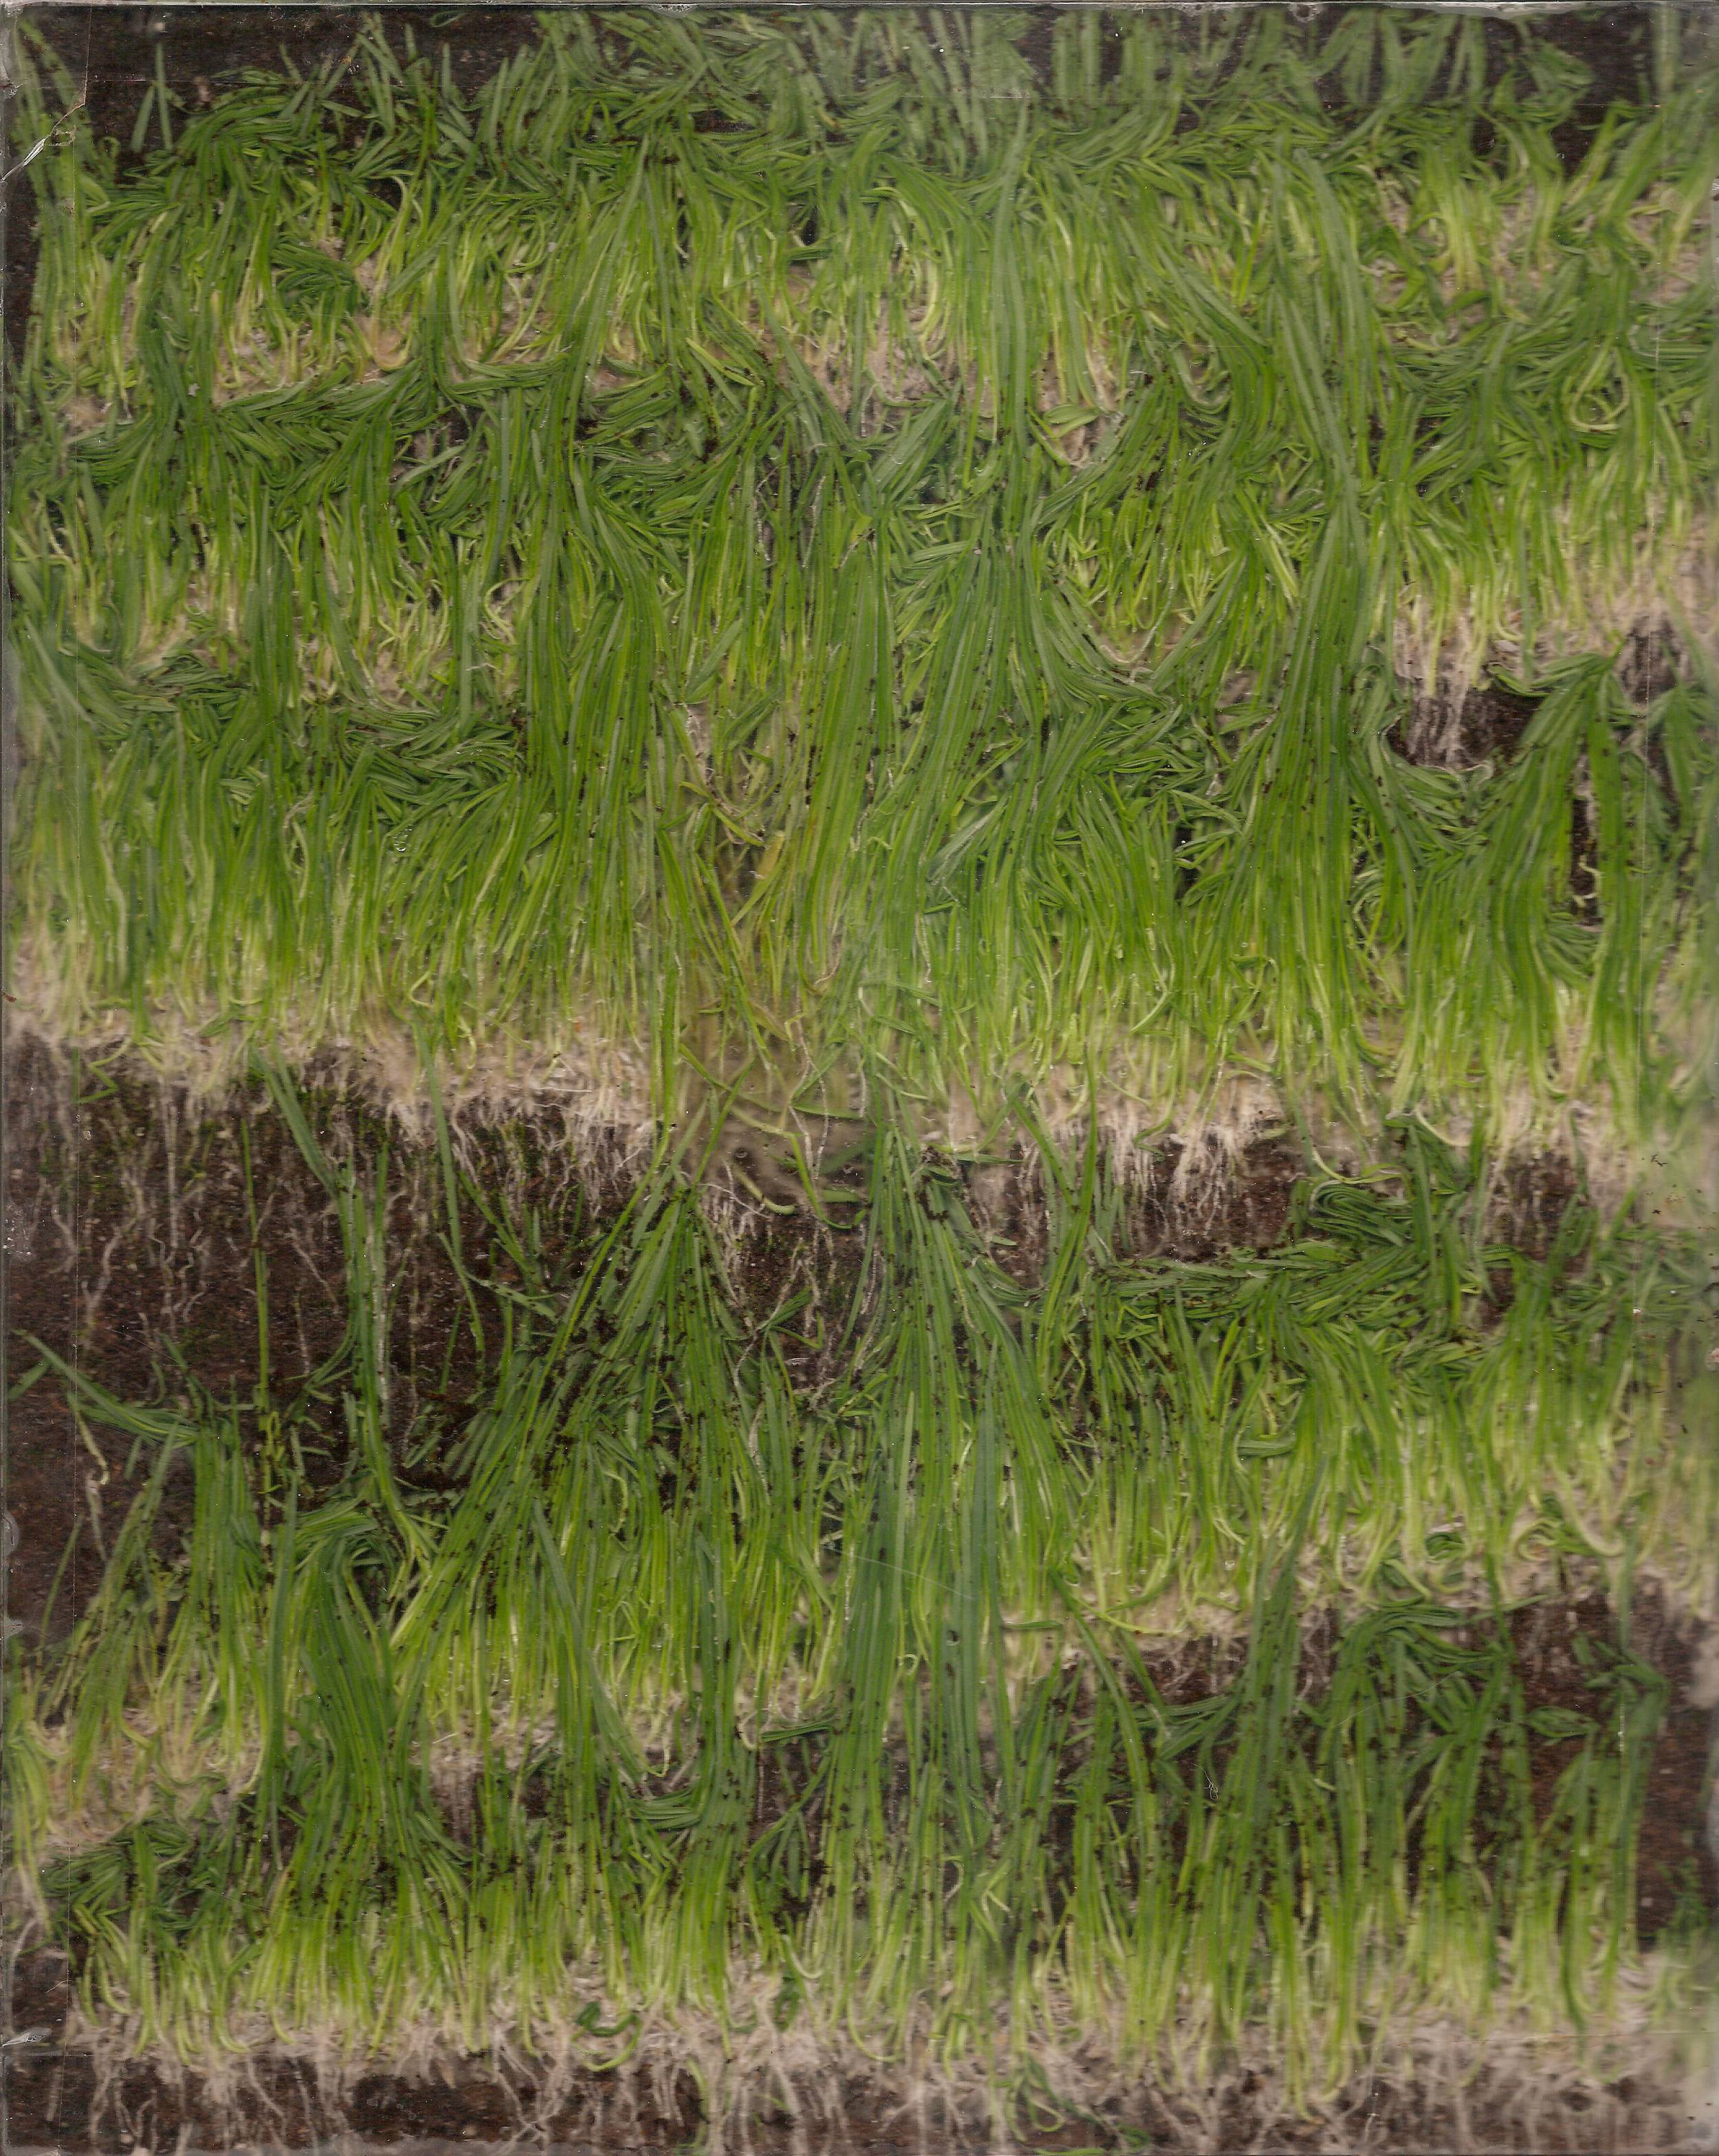  Plexiglass, Grass Seed, Soil  2013 